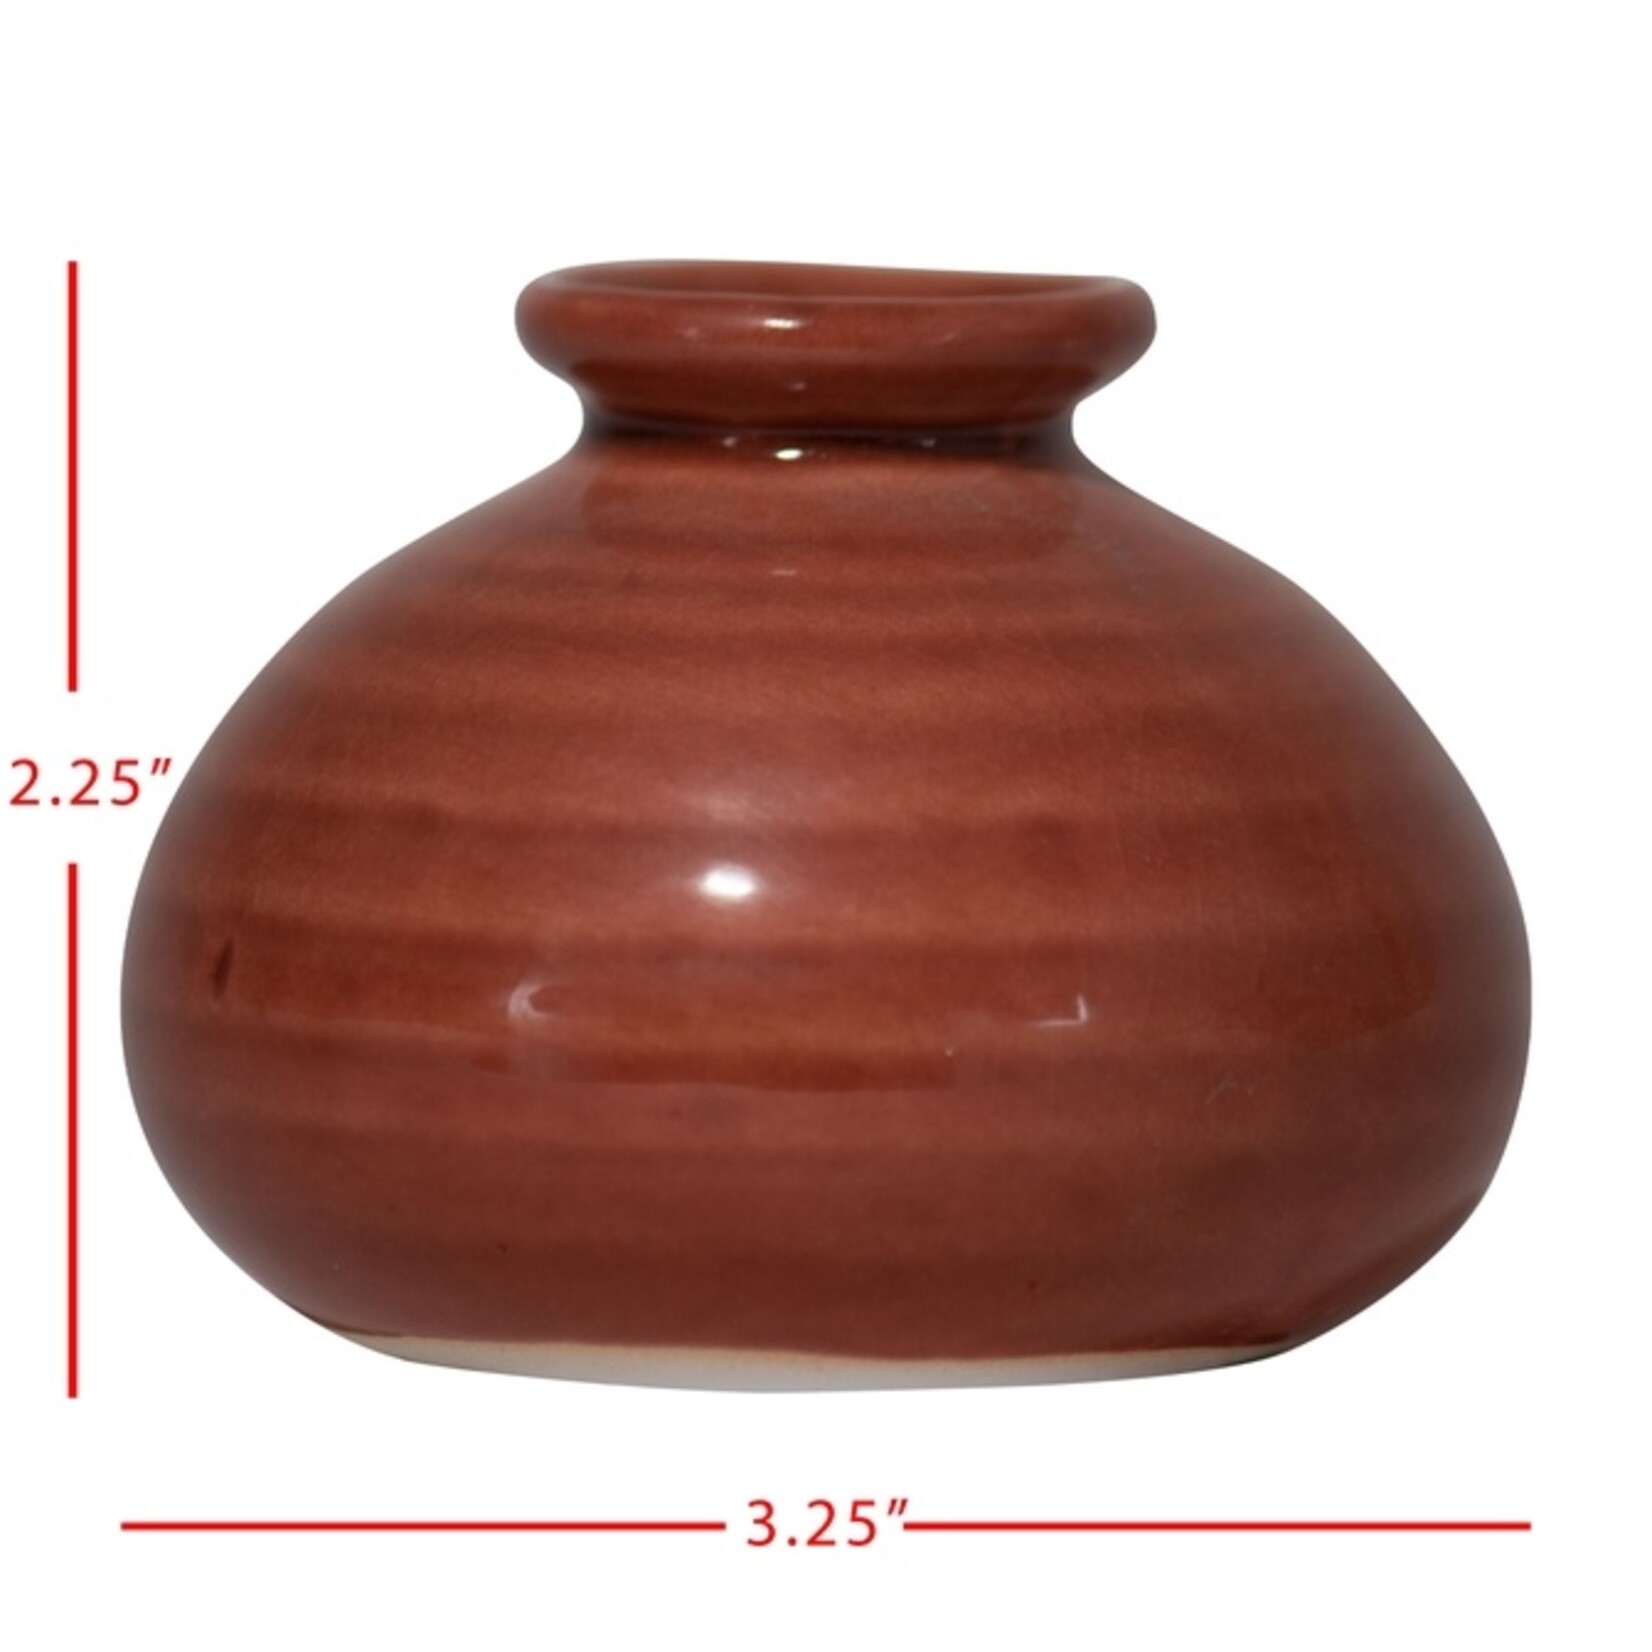 Ceramic Rust Bud Vase